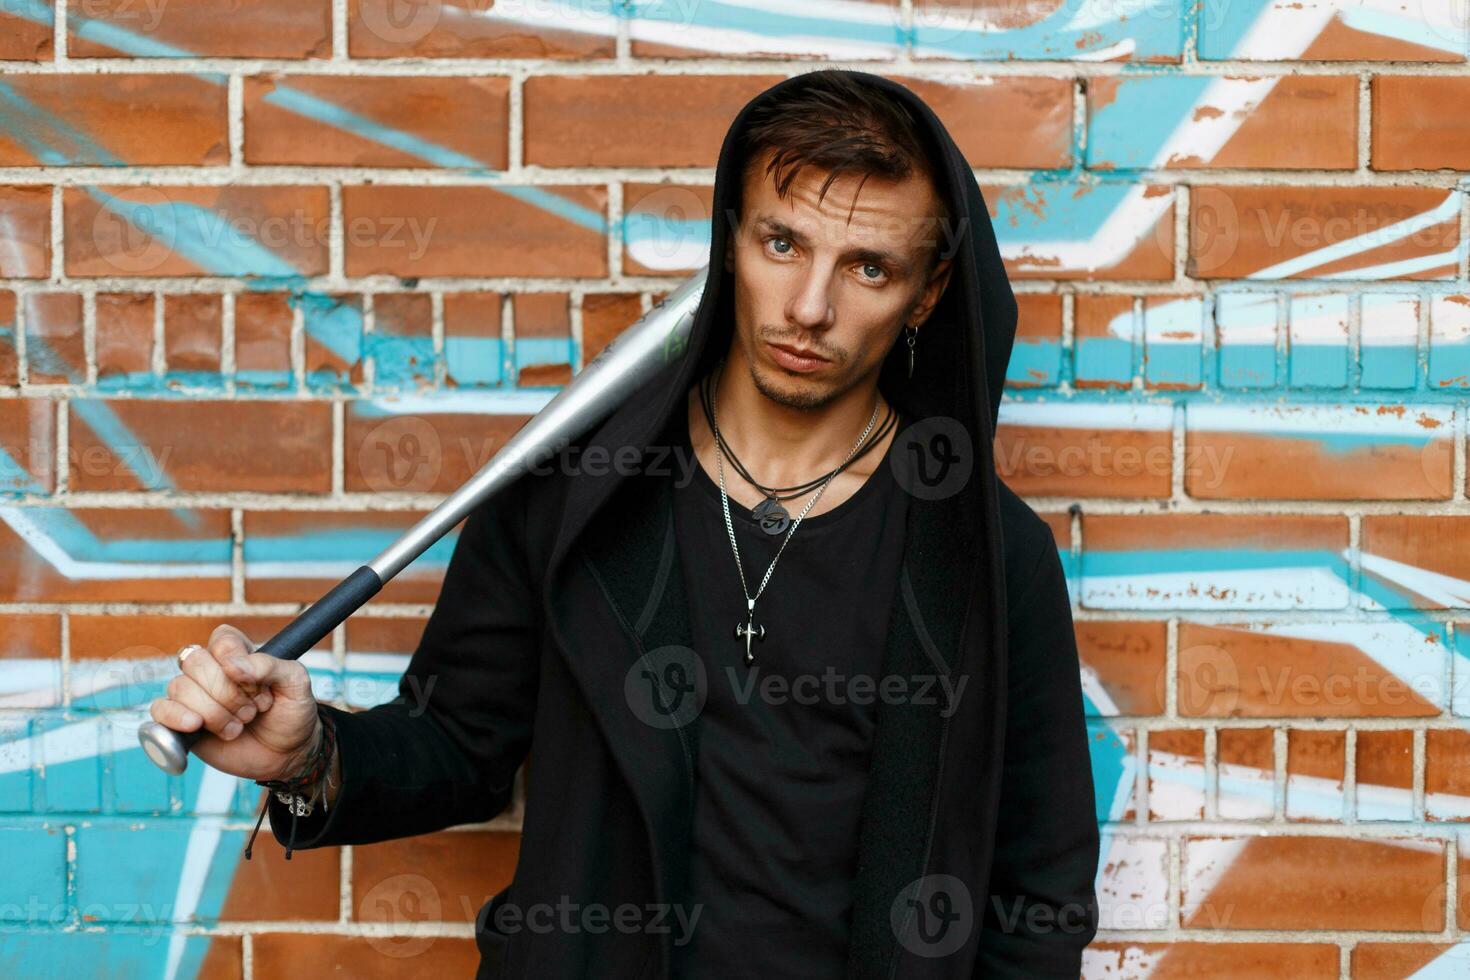 enojado chico cerca ladrillo pared con pintada participación un metal murciélago foto